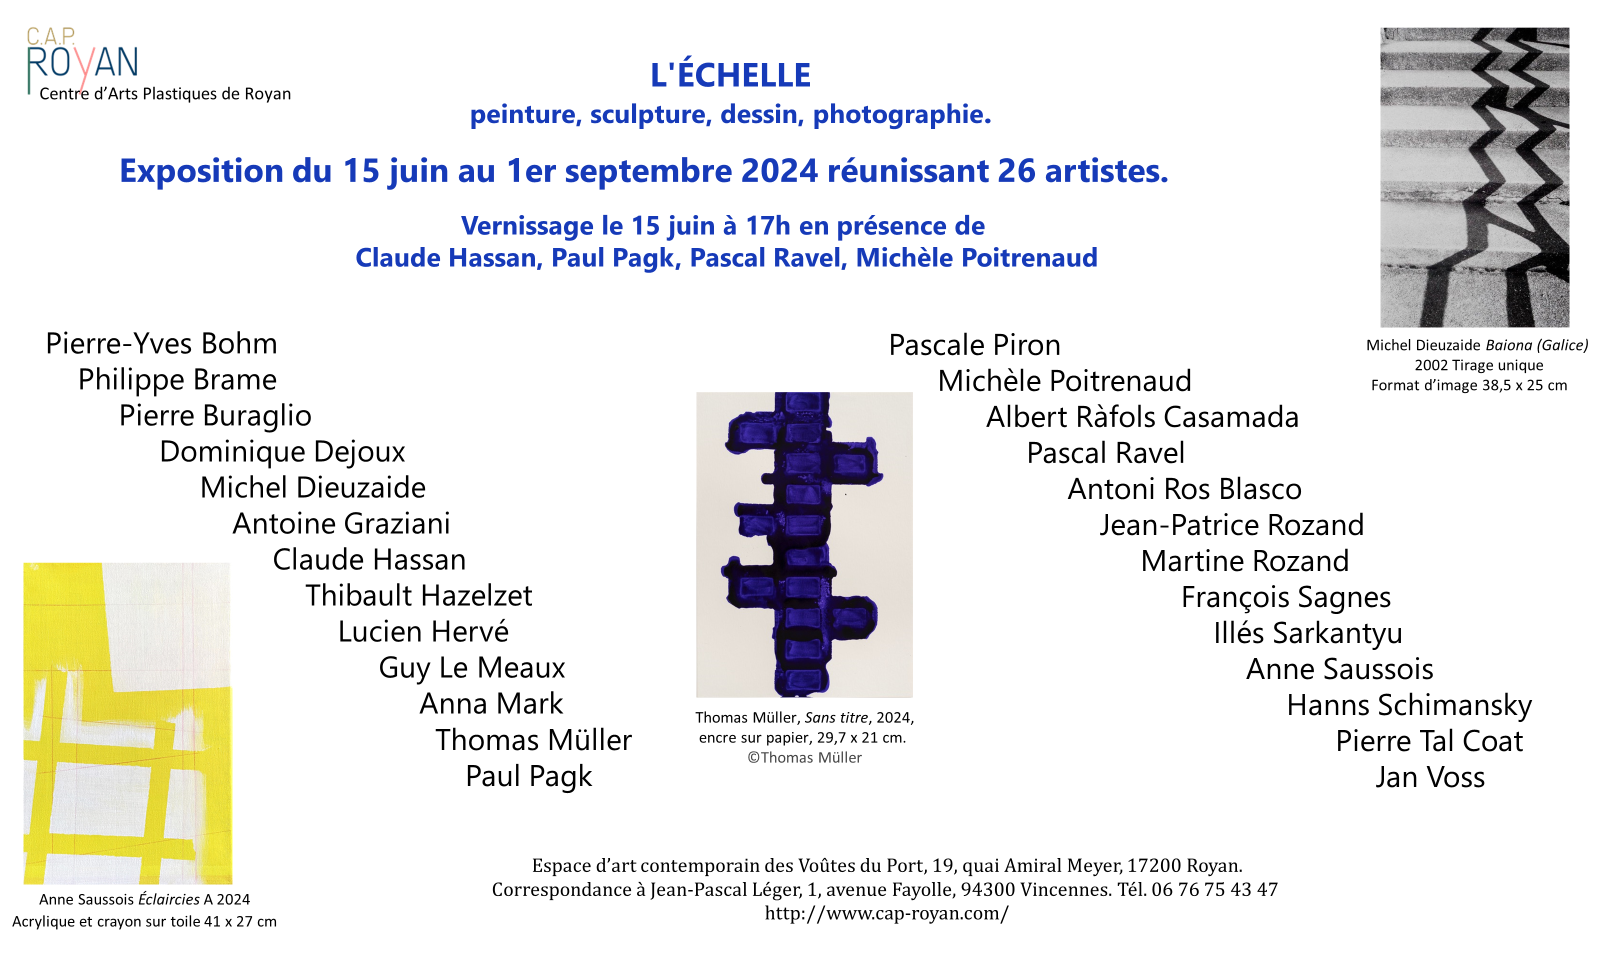 Exposition L'Échelle, Centre d'Arts plastiques de Royan, du 15 juin 2024 au 1er septmebre 2024